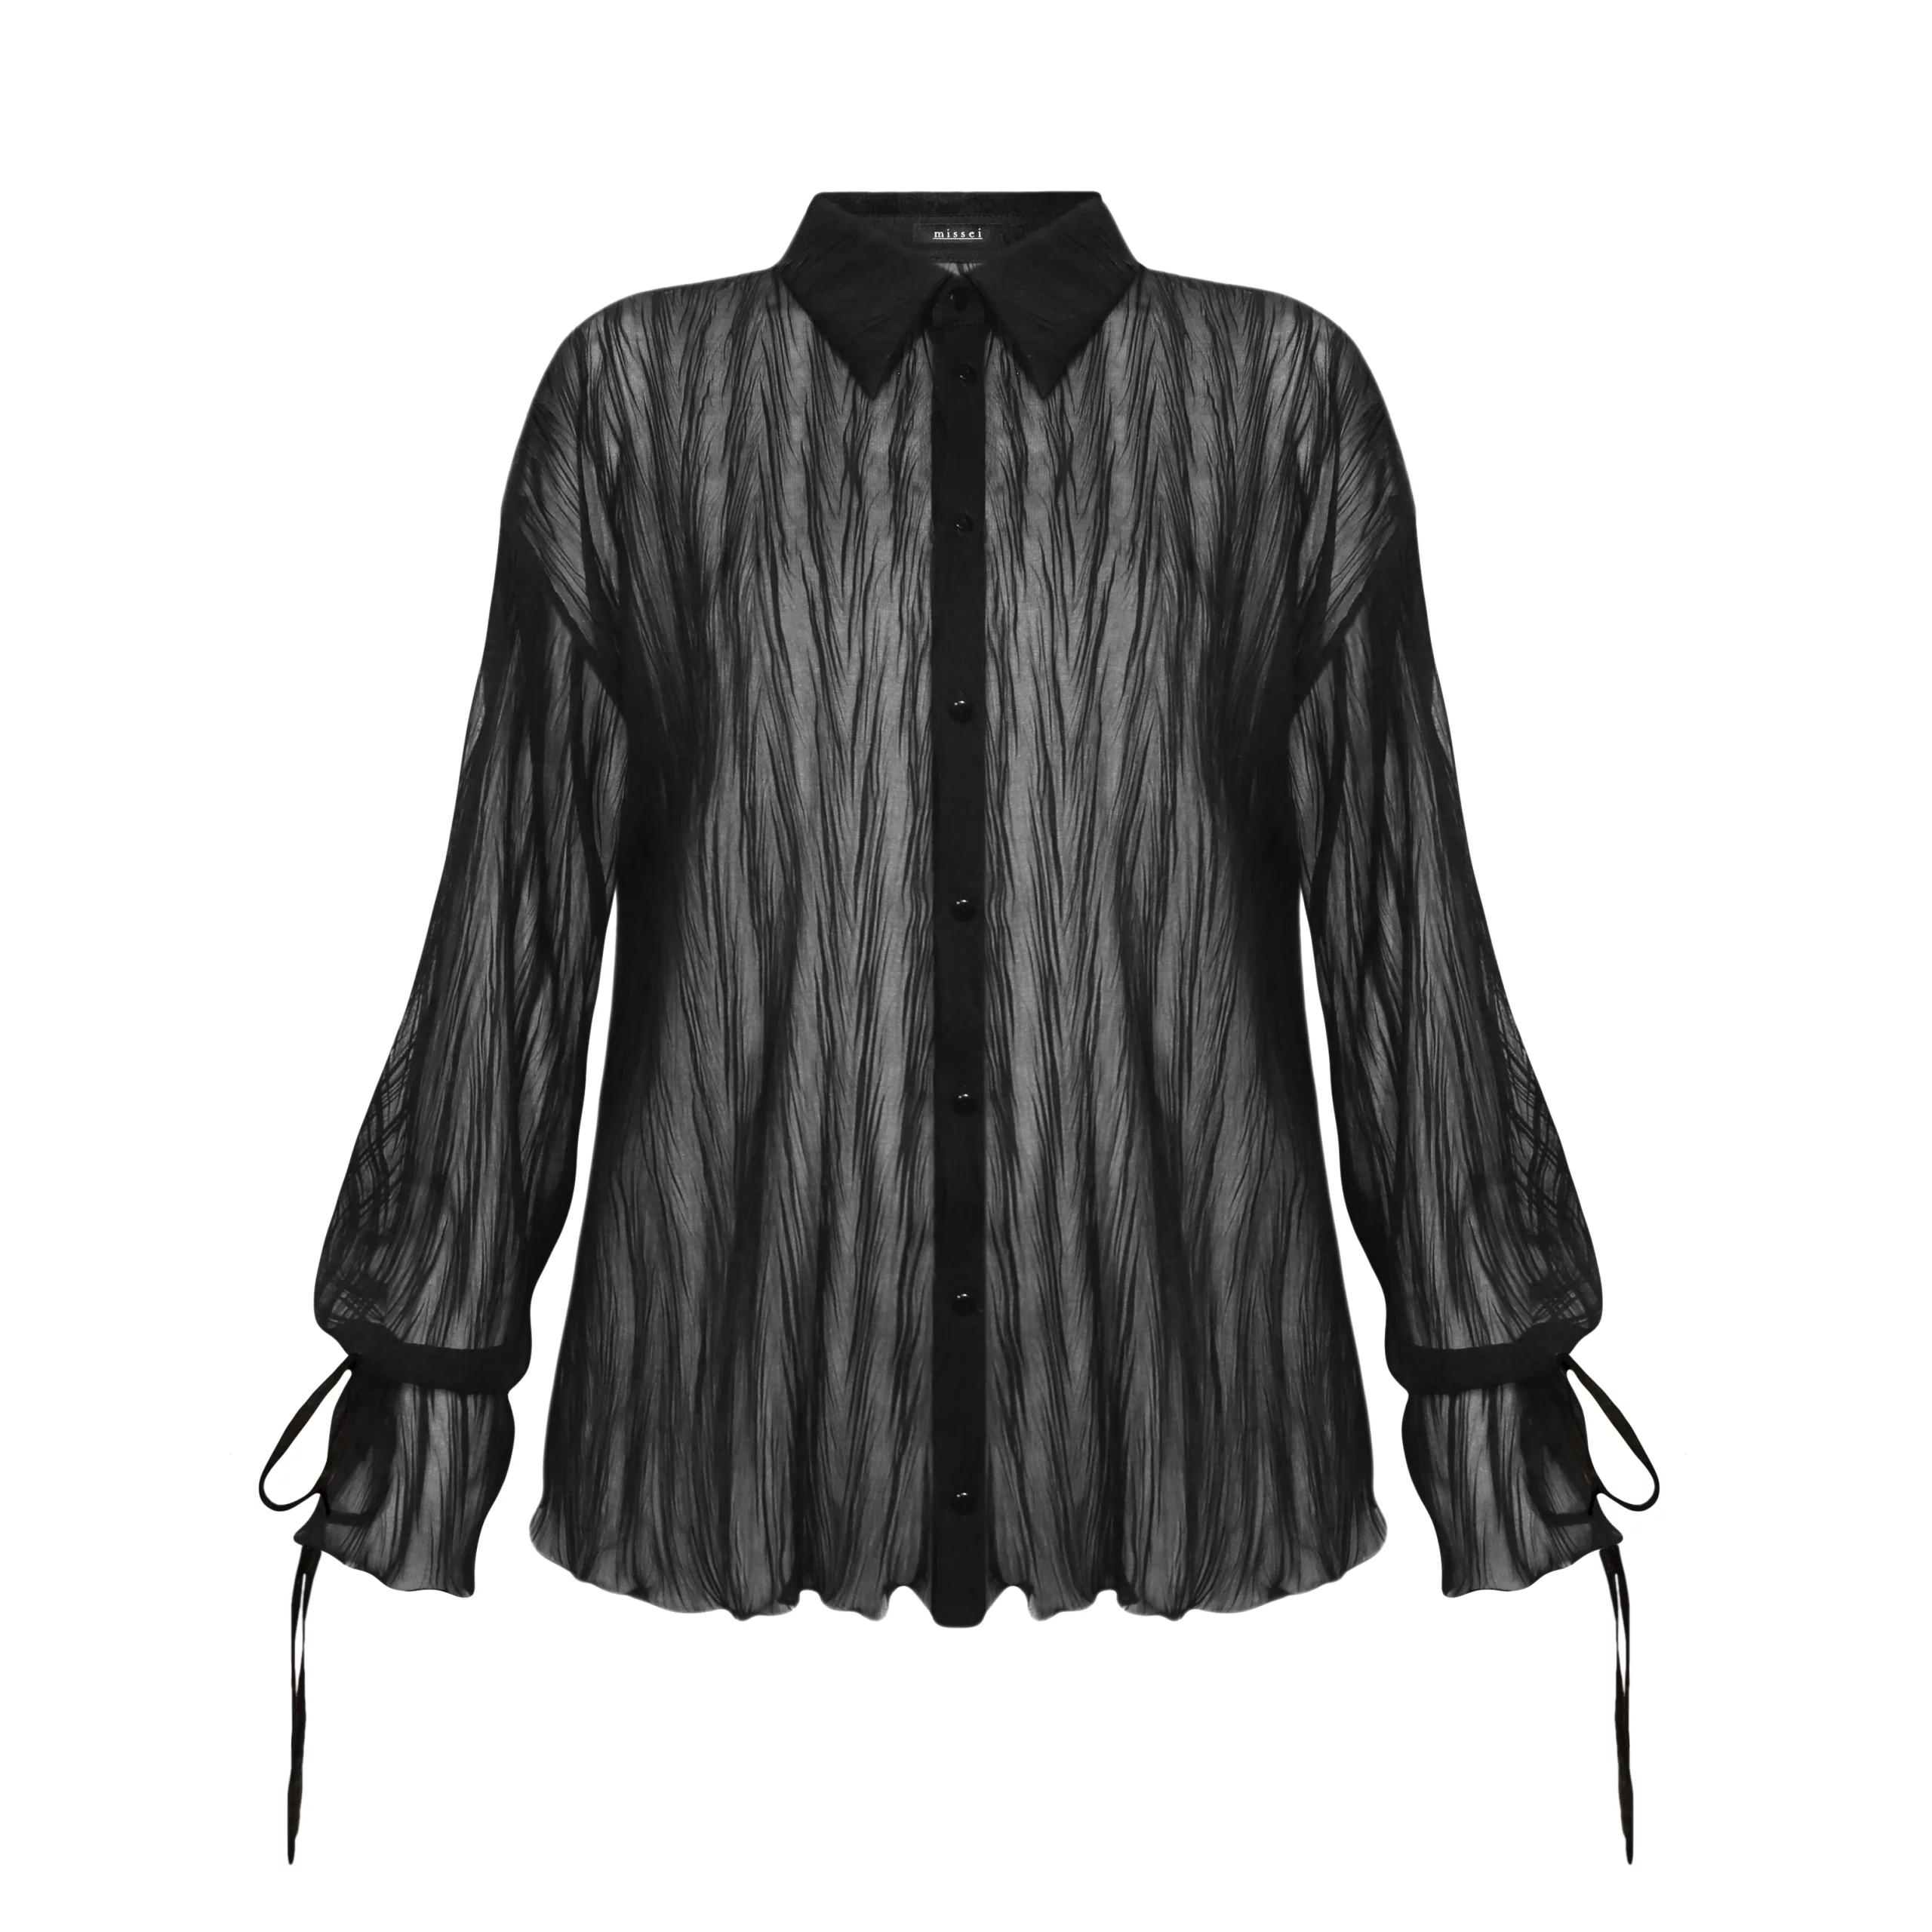 koszula czarna koszula plisowana koszula kreszowana koszula strukturalna koszula transparentna koszula przezroczysta wiązane rękawy guziki z logo marki guziki corozo polska marka missei 2